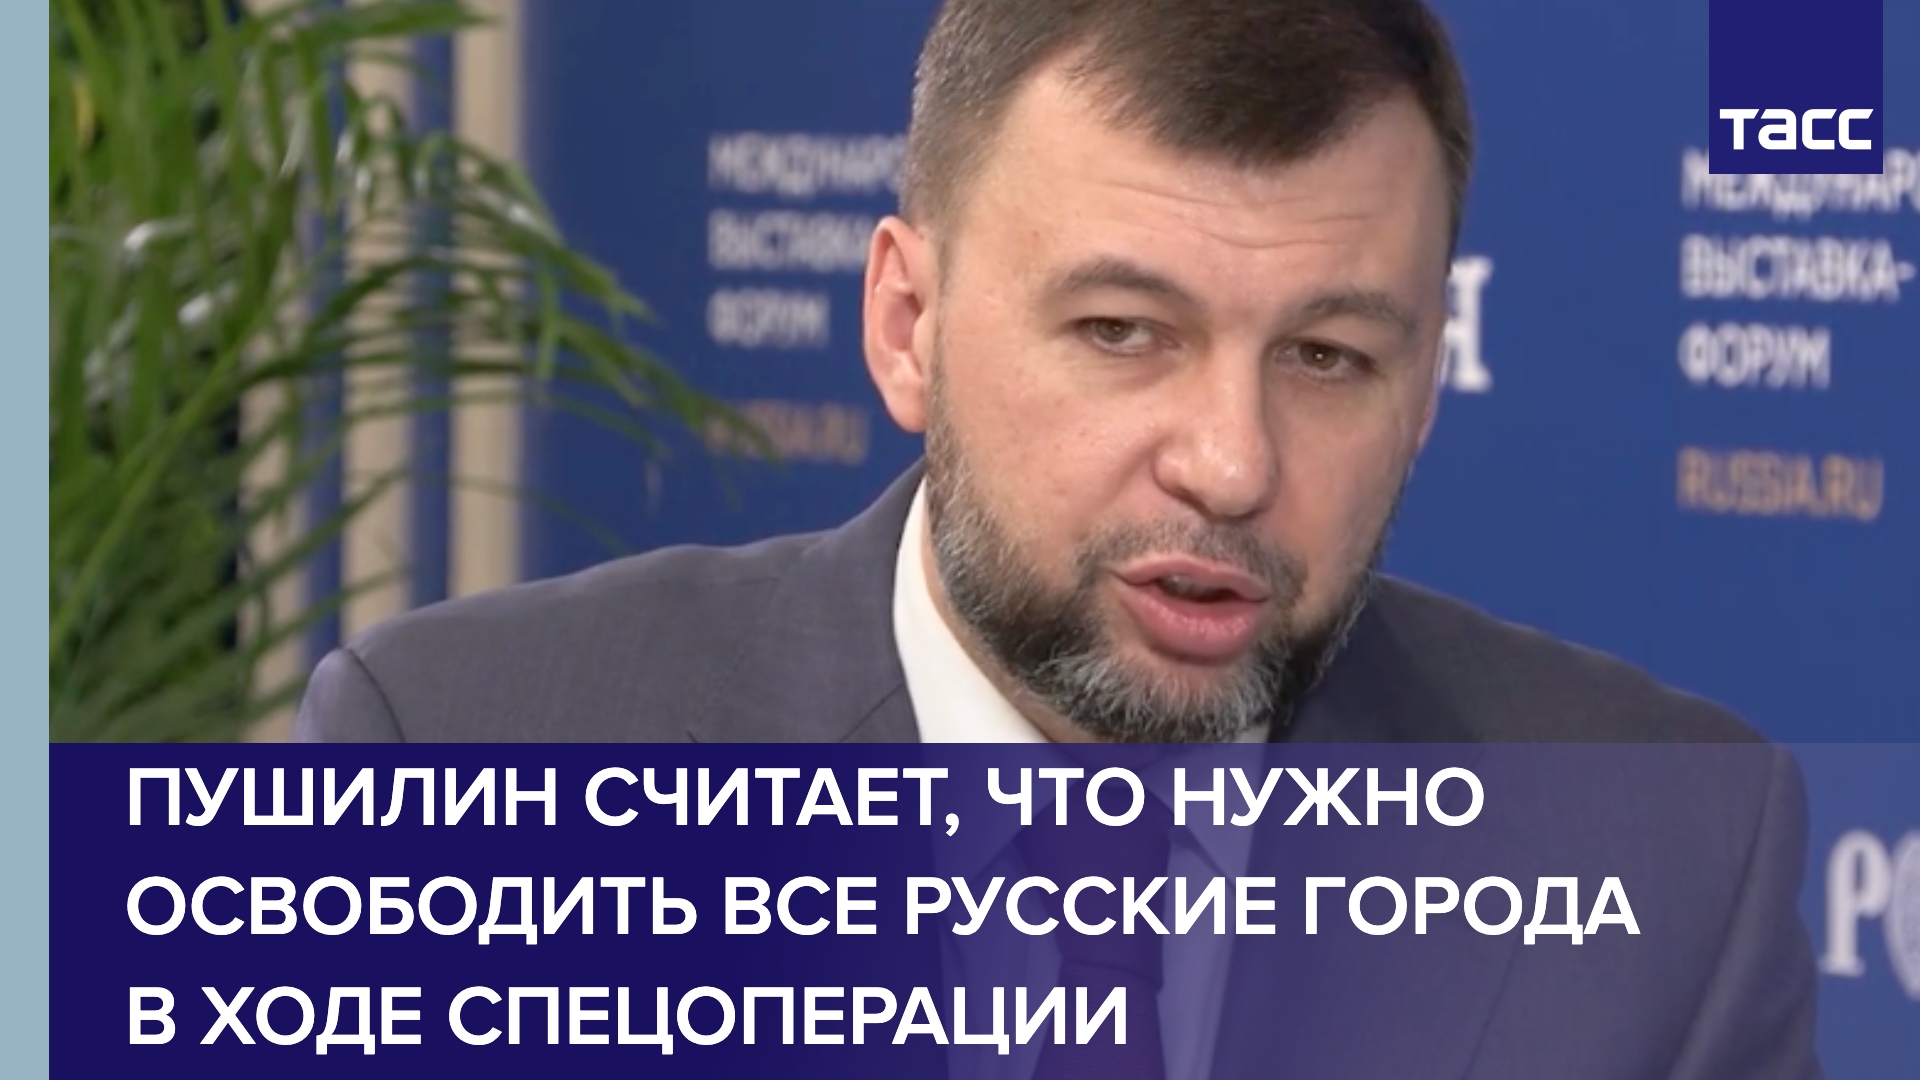 Пушилин считает, что нужно освободить все русские города в ходе спецоперации